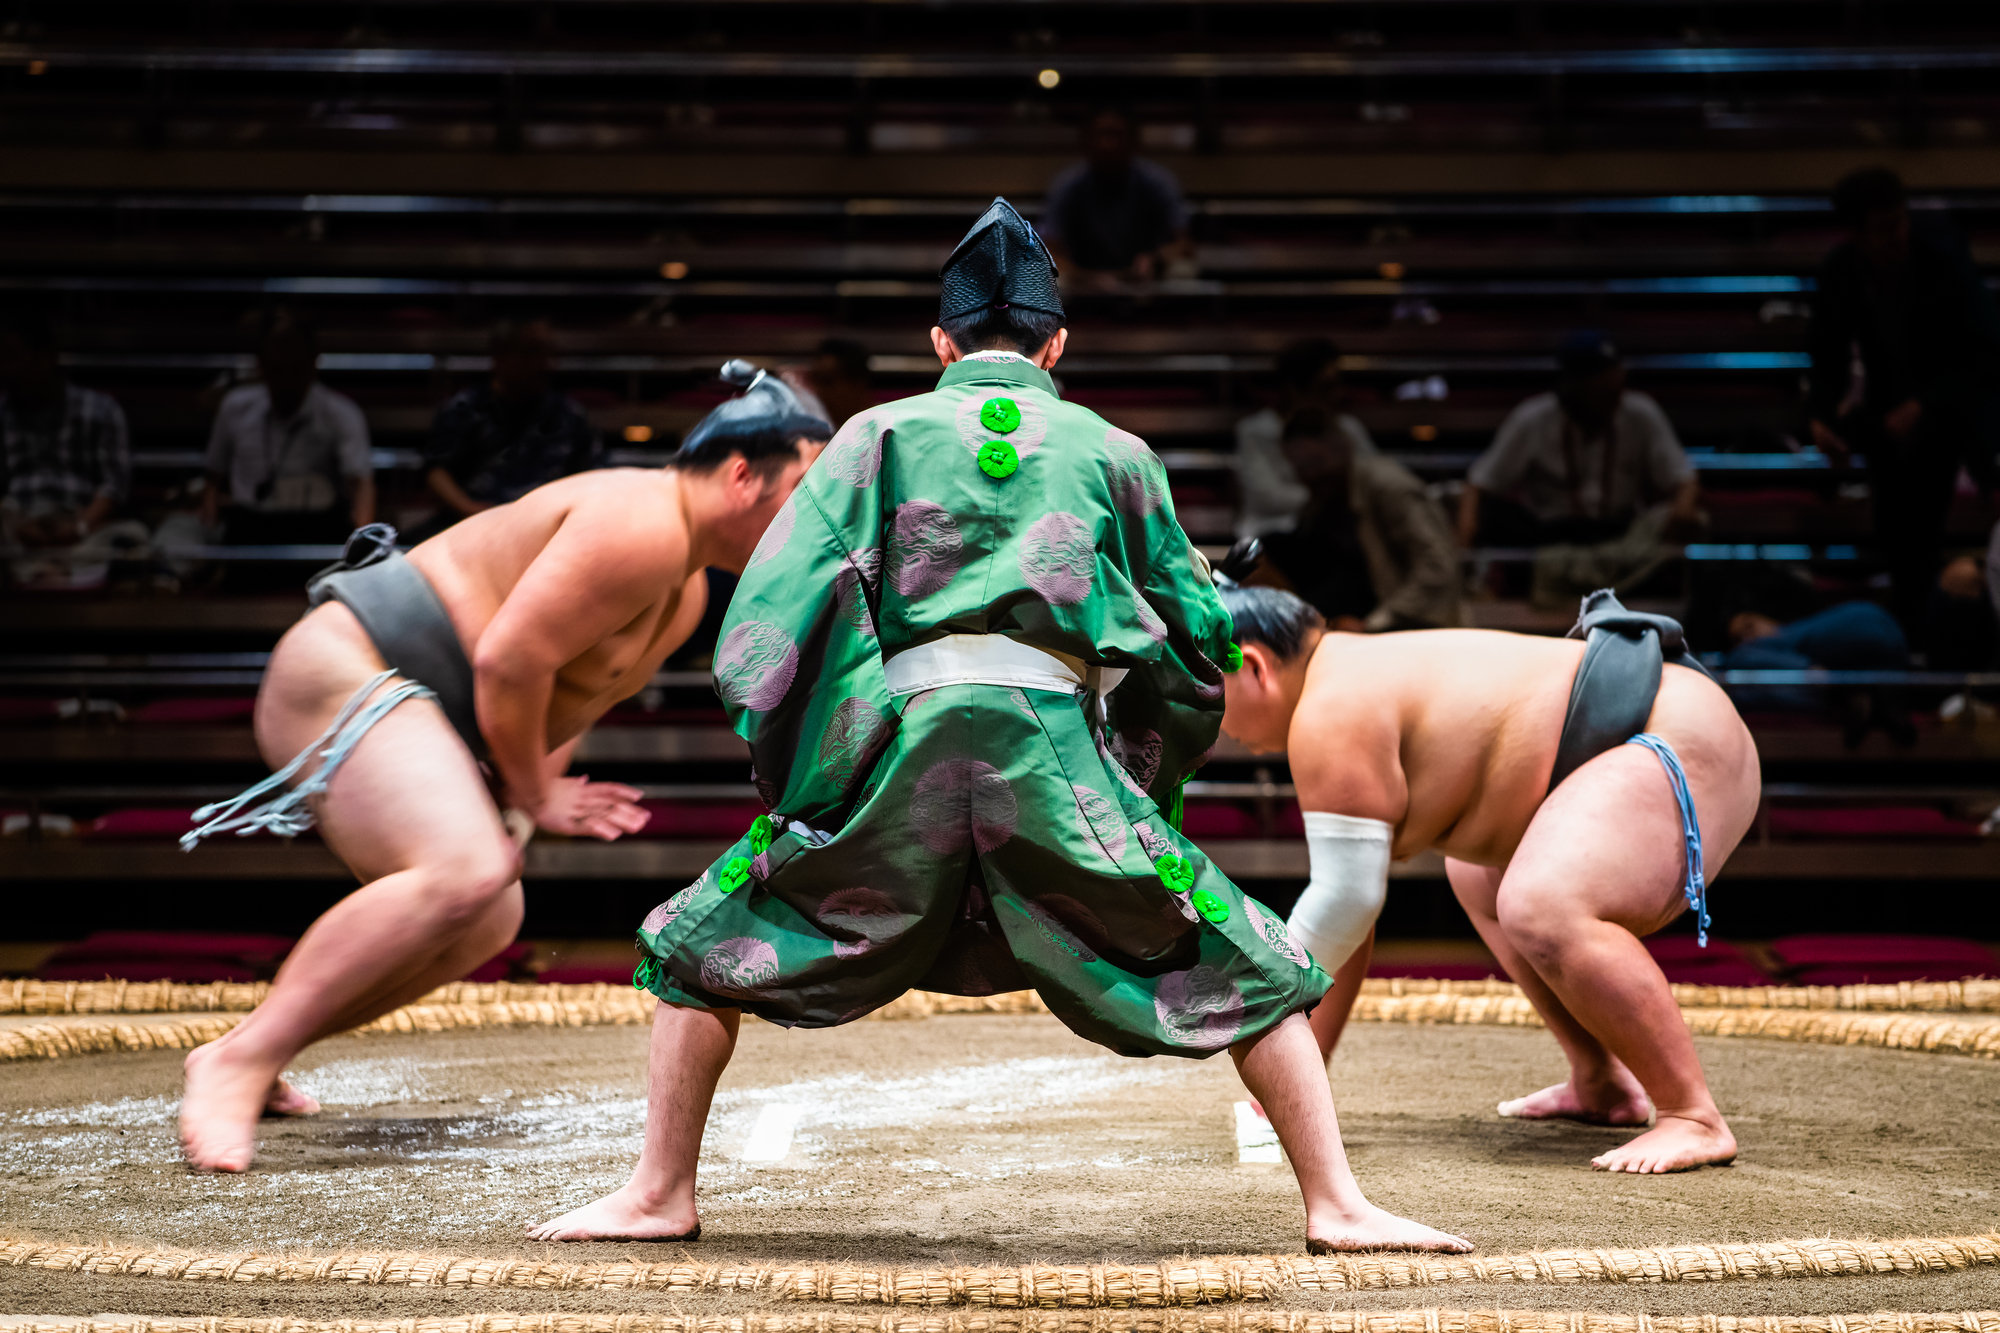 相撲の歴史は神話の世界まで遡る！？神話から現代までの移り変わり | にほんご日和